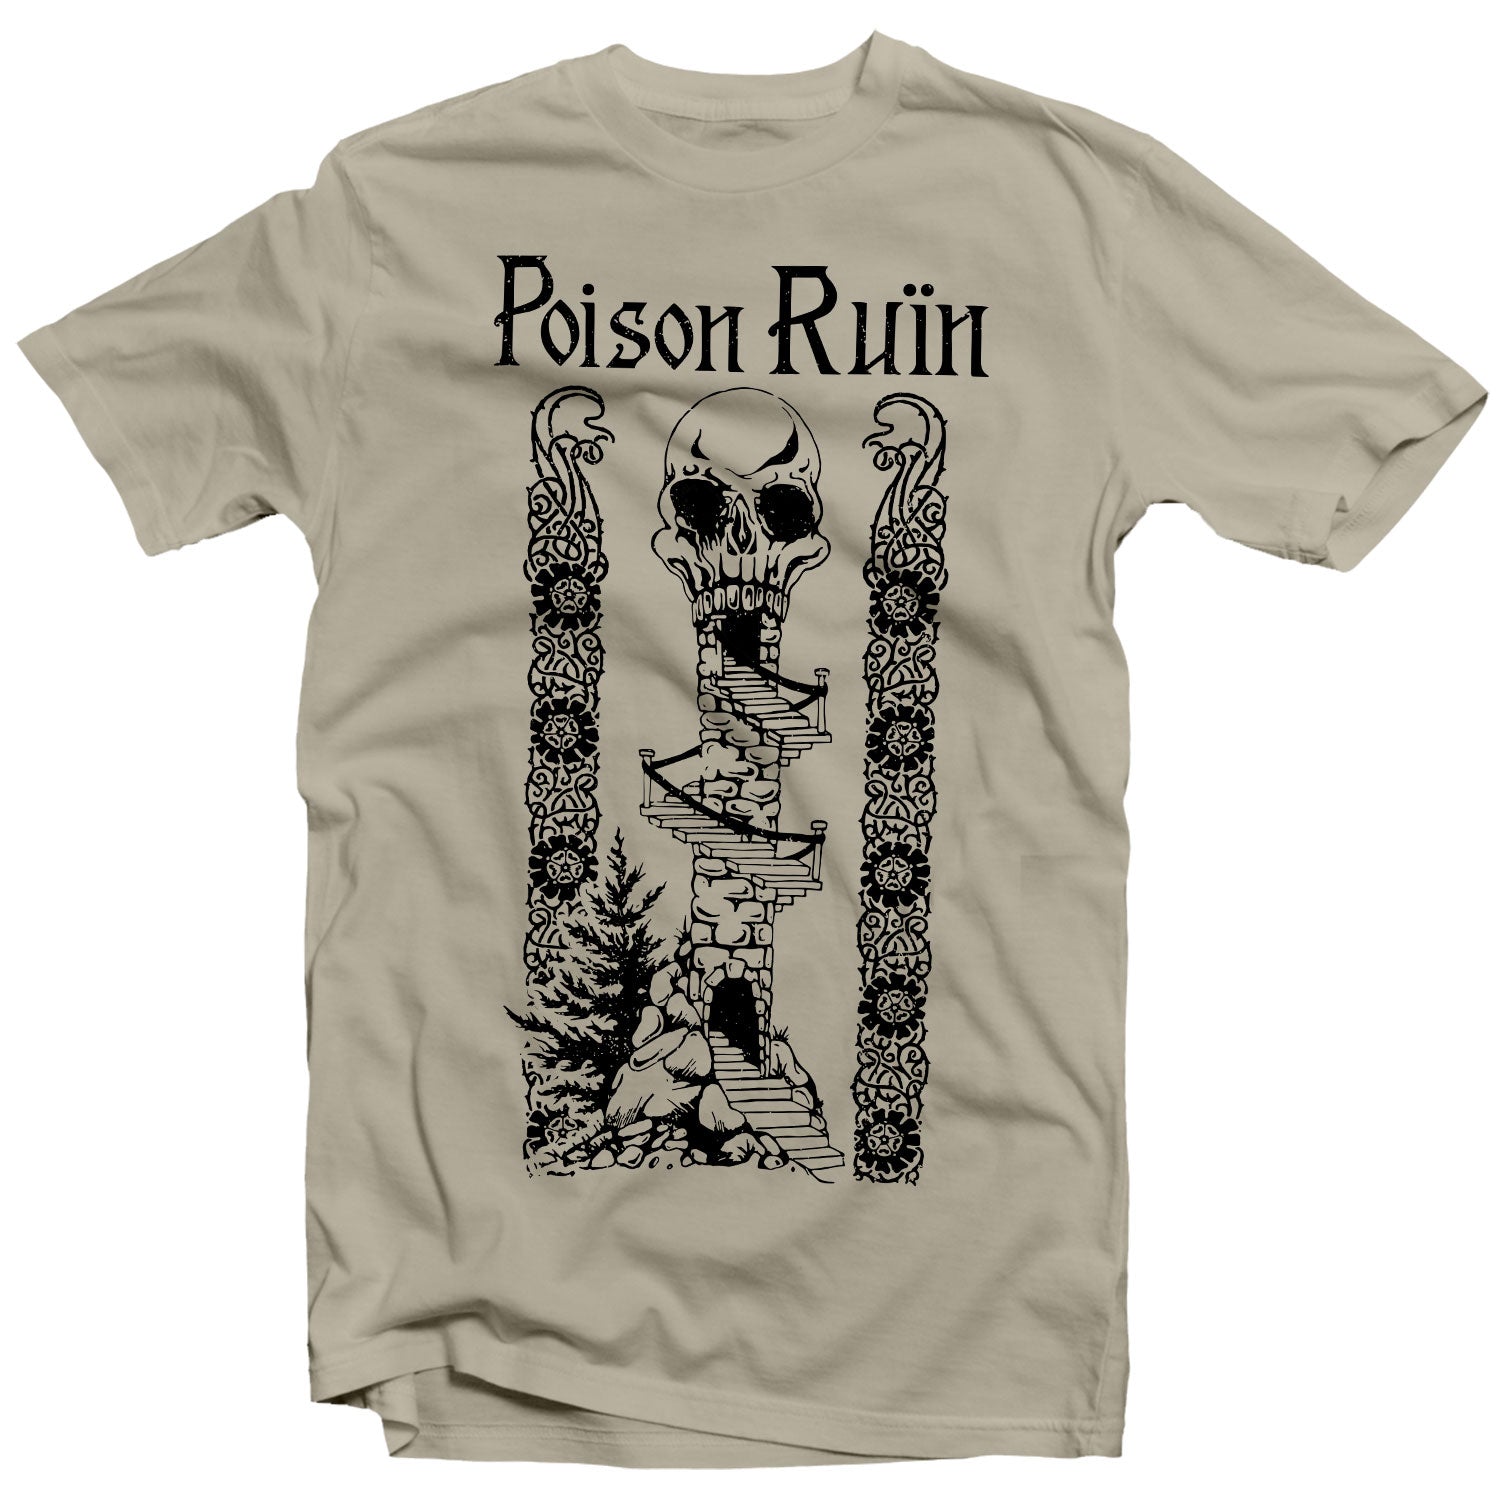 Poison Ruïn "Poison Ruïn" T-Shirt